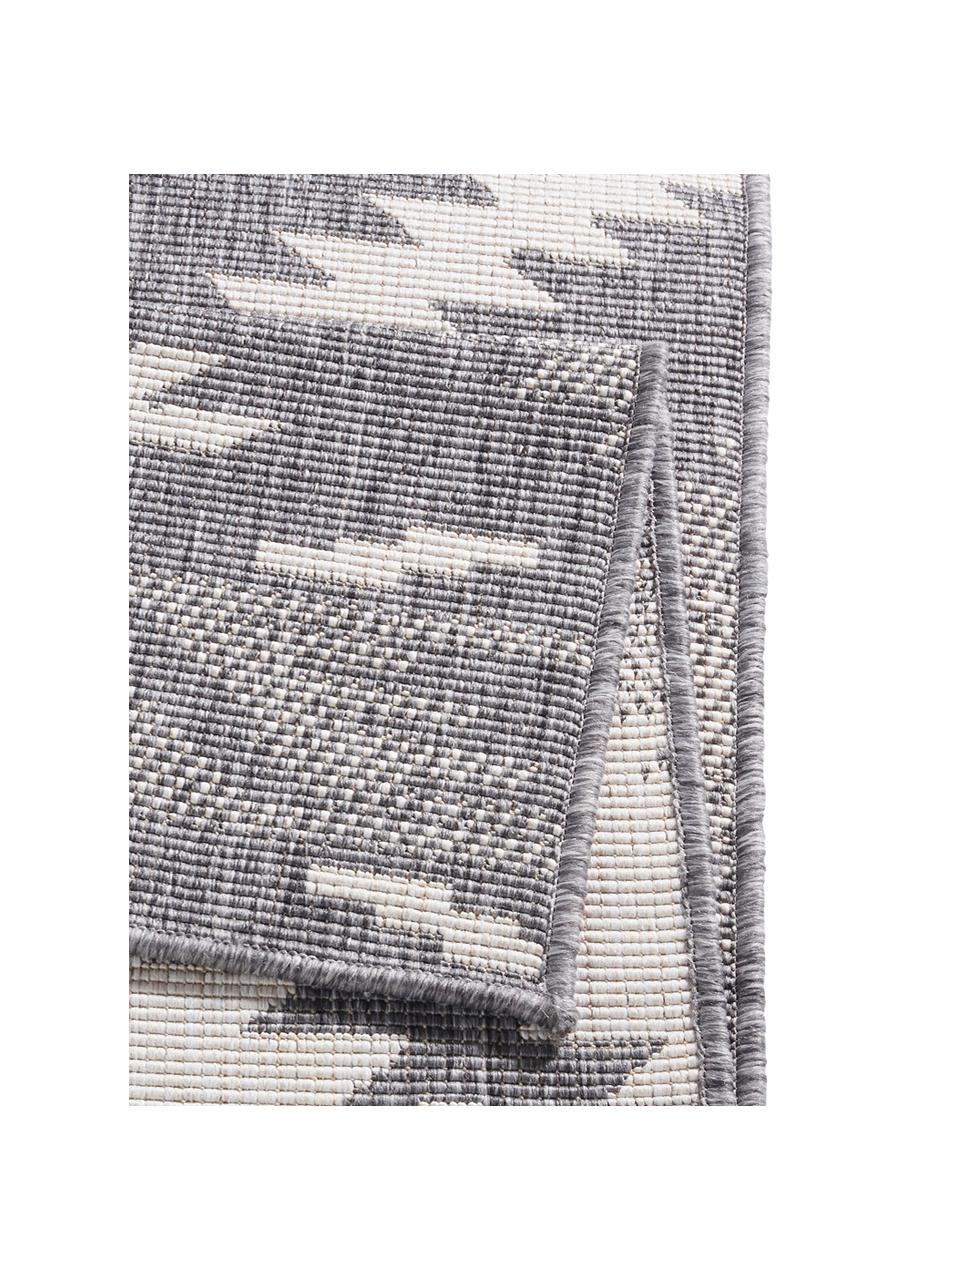 Dubbelzijdig in- en outdoor vloerkleed Malibu in grijs/crèmekleur, Grijs, crèmekleurig, B 200 x L 290 cm (maat L)